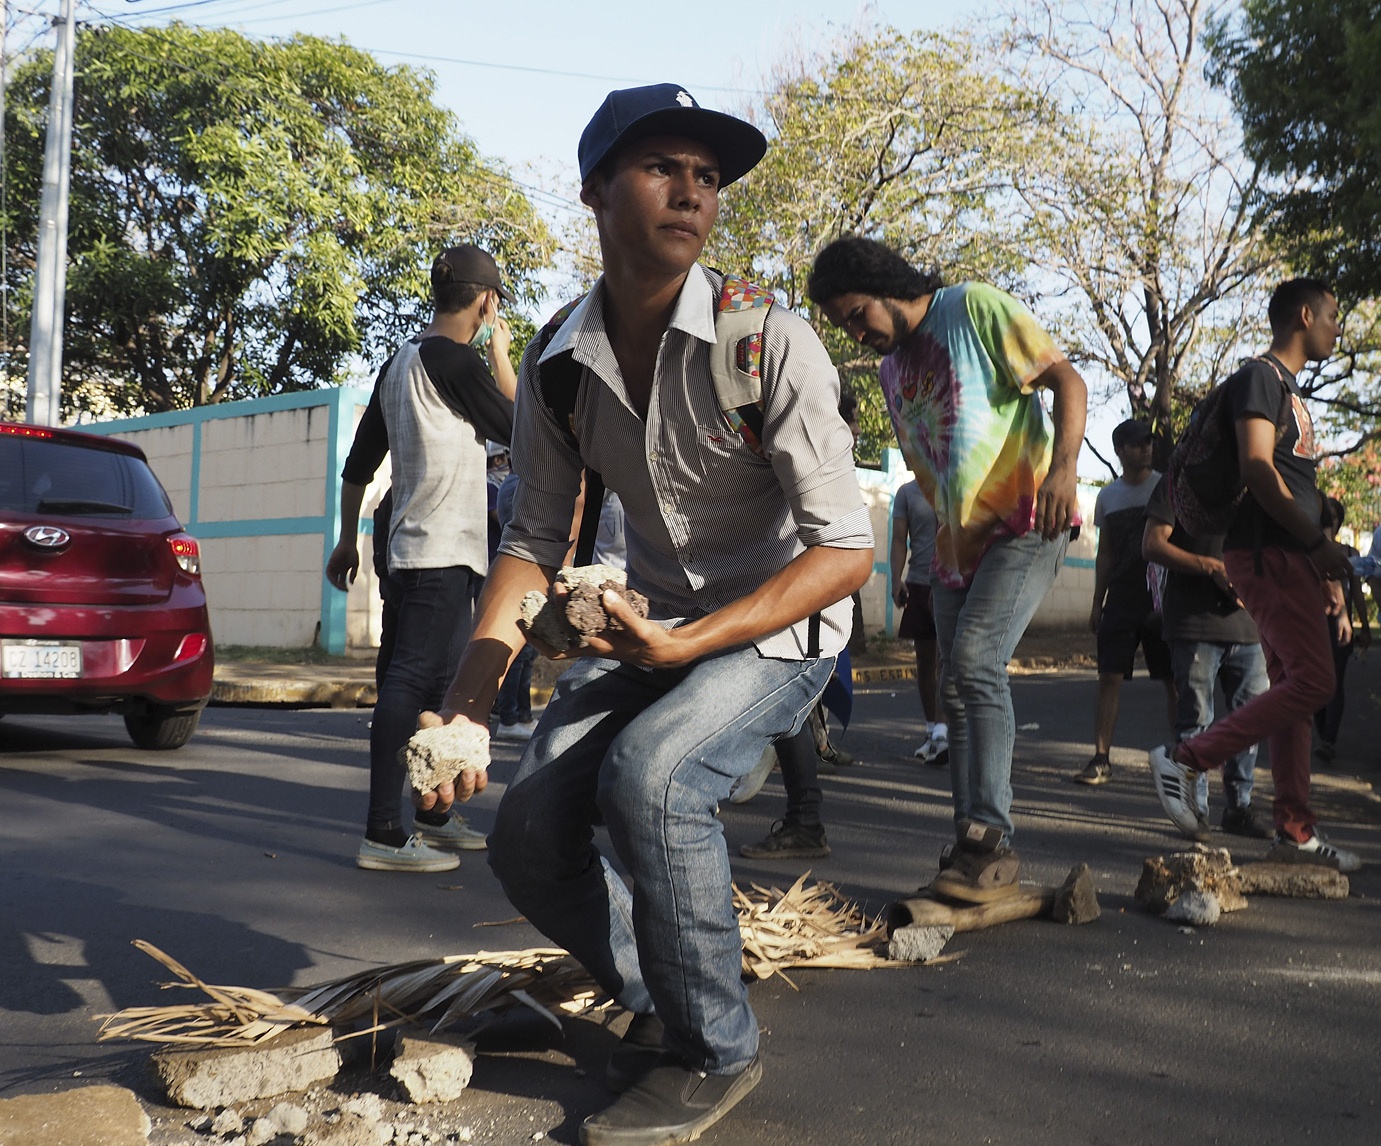 Unga bygger barrikader och samlar stenar för att försvara sig mot regeringsstyrkorna
som lurar bakom hörnet den 19 april i år. Händelserna den dagen
blev startskottet för den rådande sociala och politiska konflikten i Nicaragua.